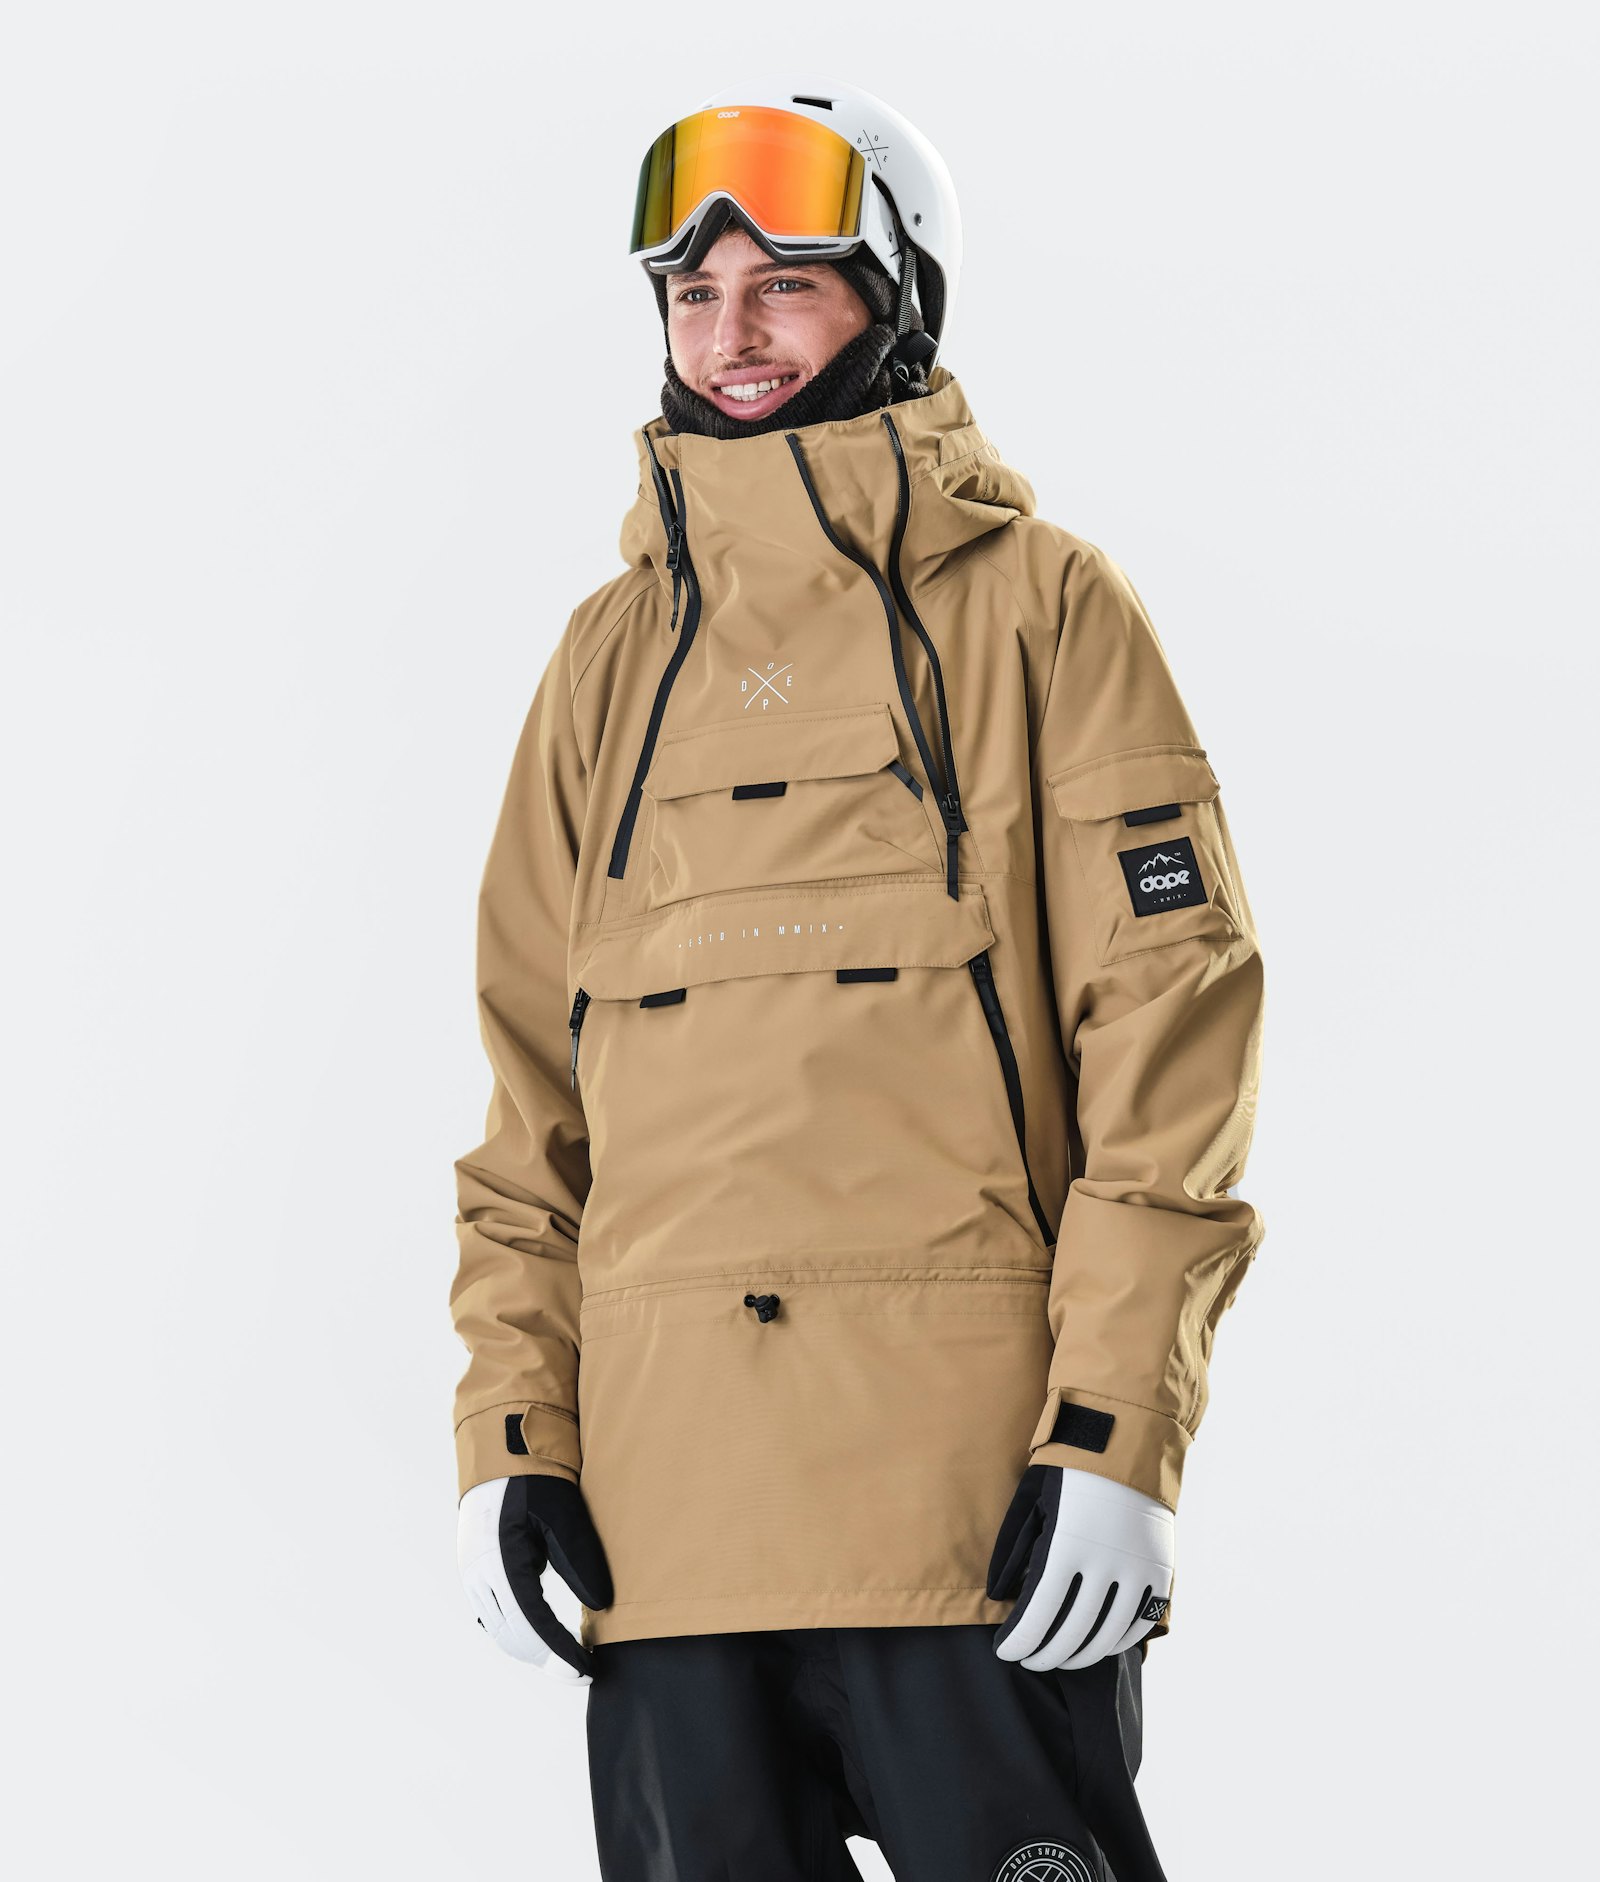 Akin 2020 Snowboard Jacket Men Gold Renewed